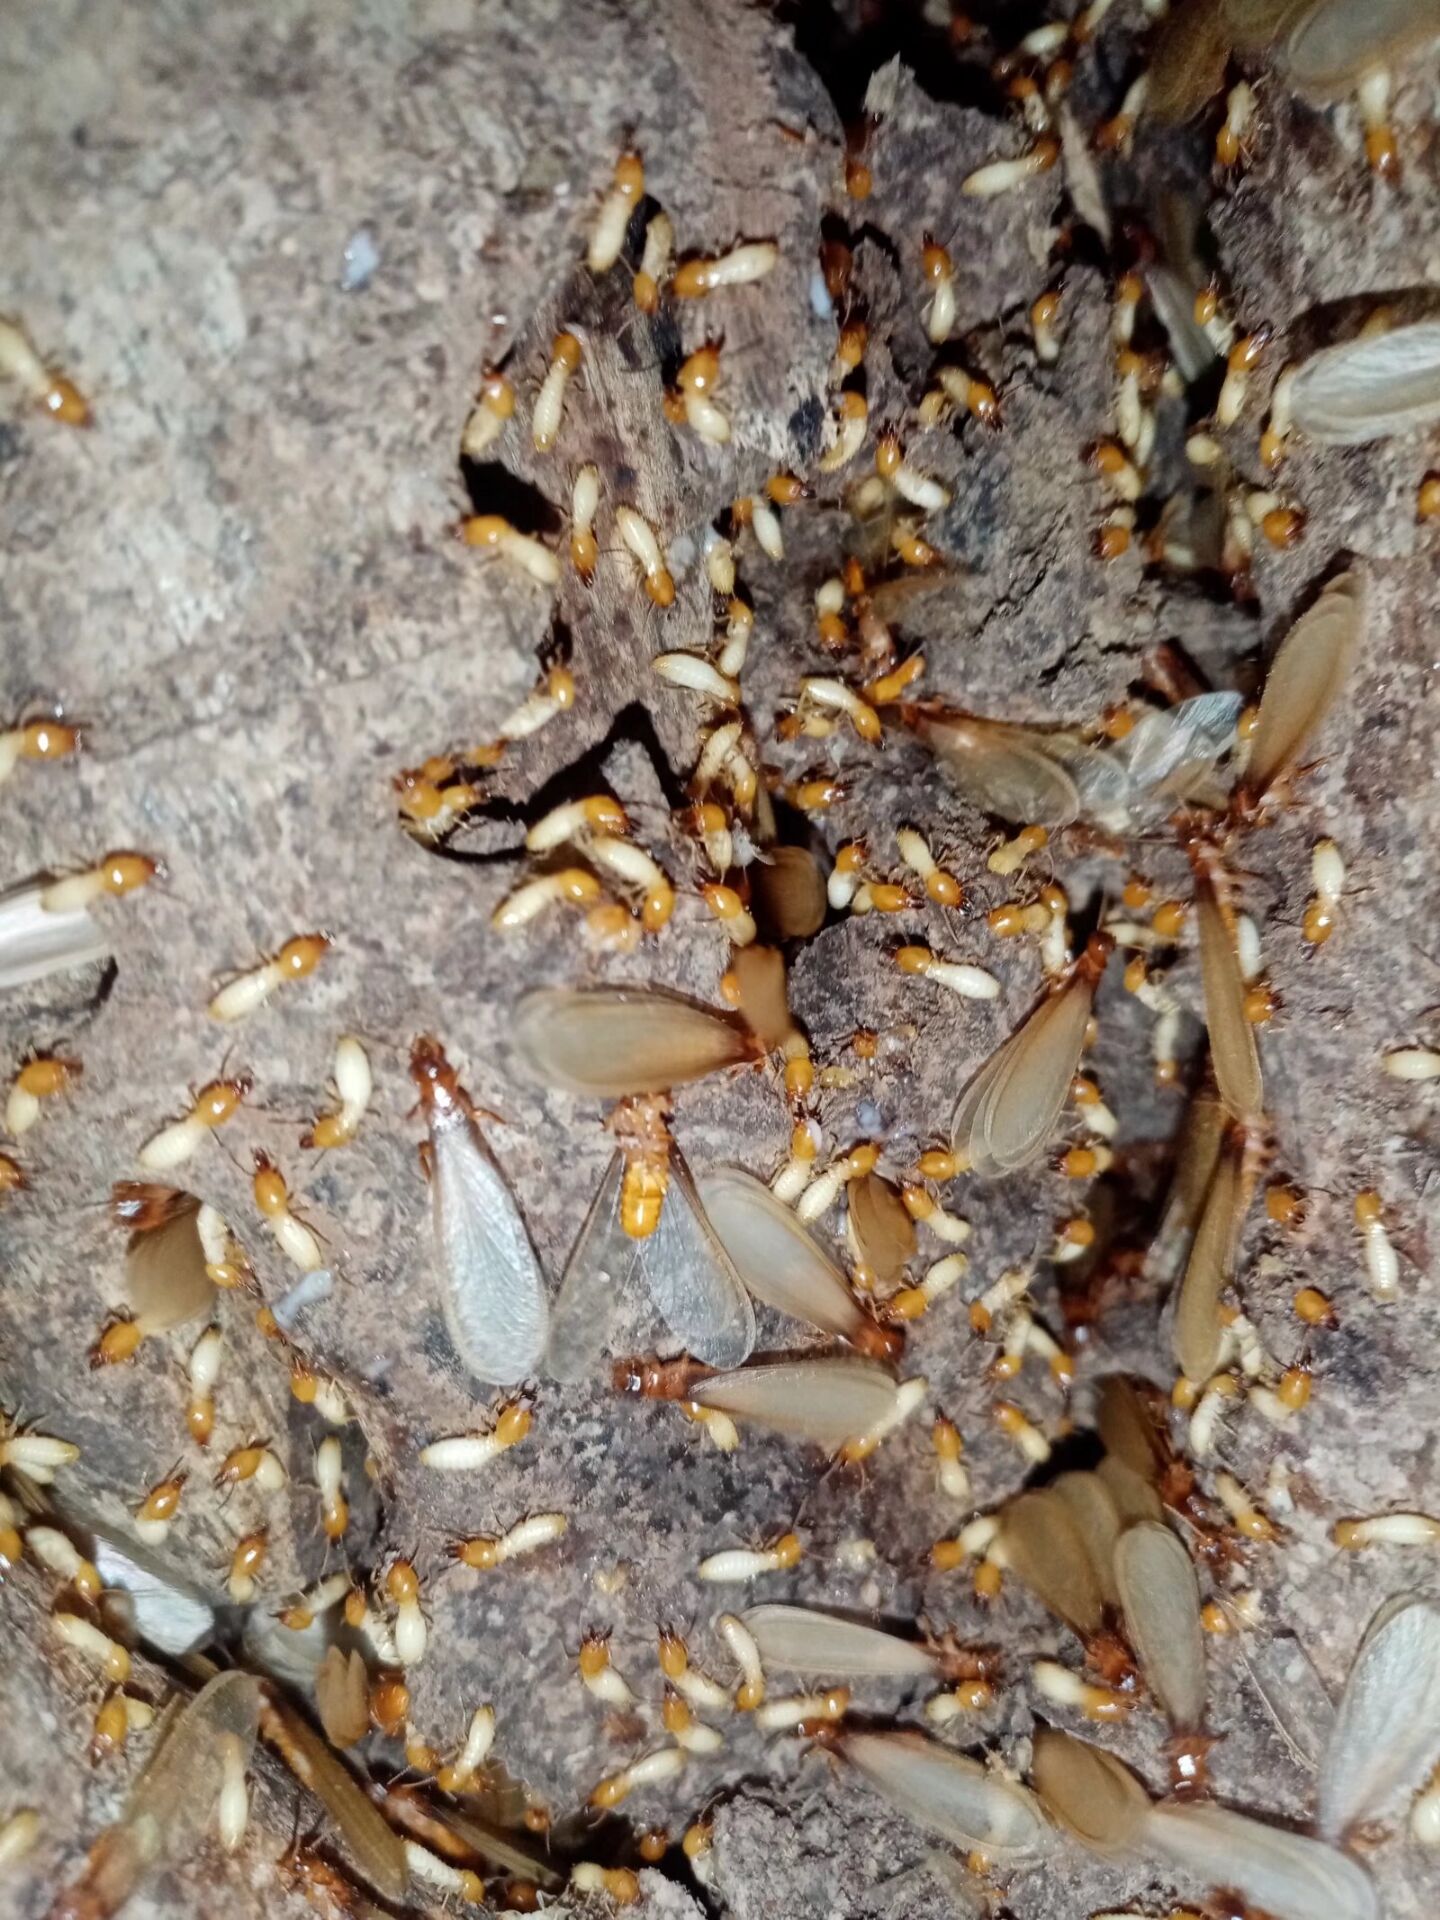 一窝60年的蚁穴被发现，蚁后体长5公分，蚁害到底有多严重？_白蚁